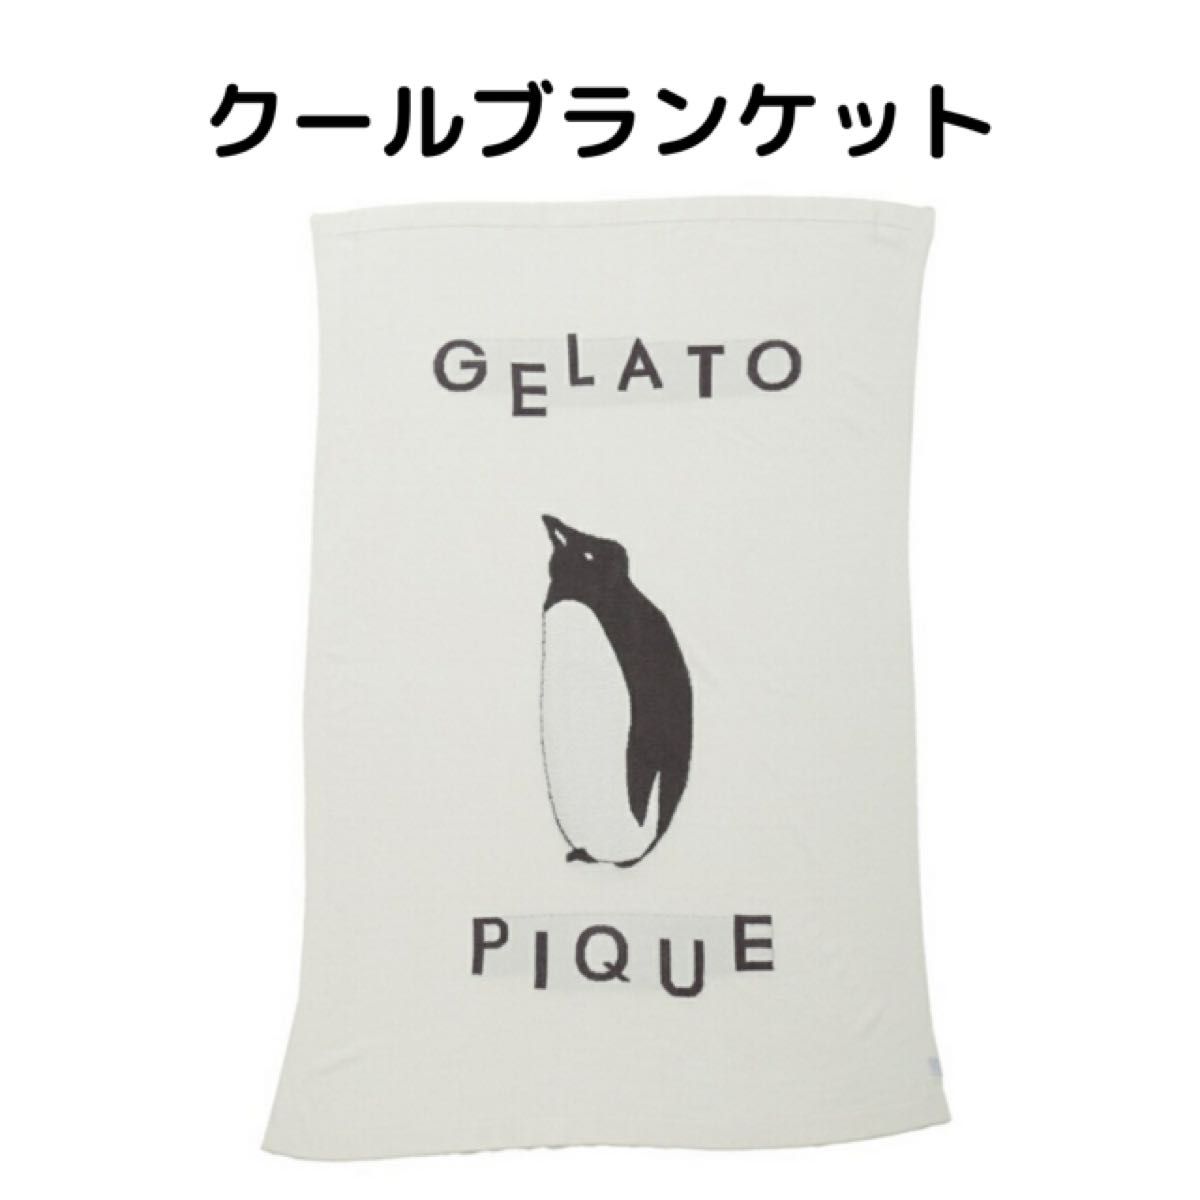 gelato pique ジャガードブランケット ジェラートピケ 冷感 ペンギン